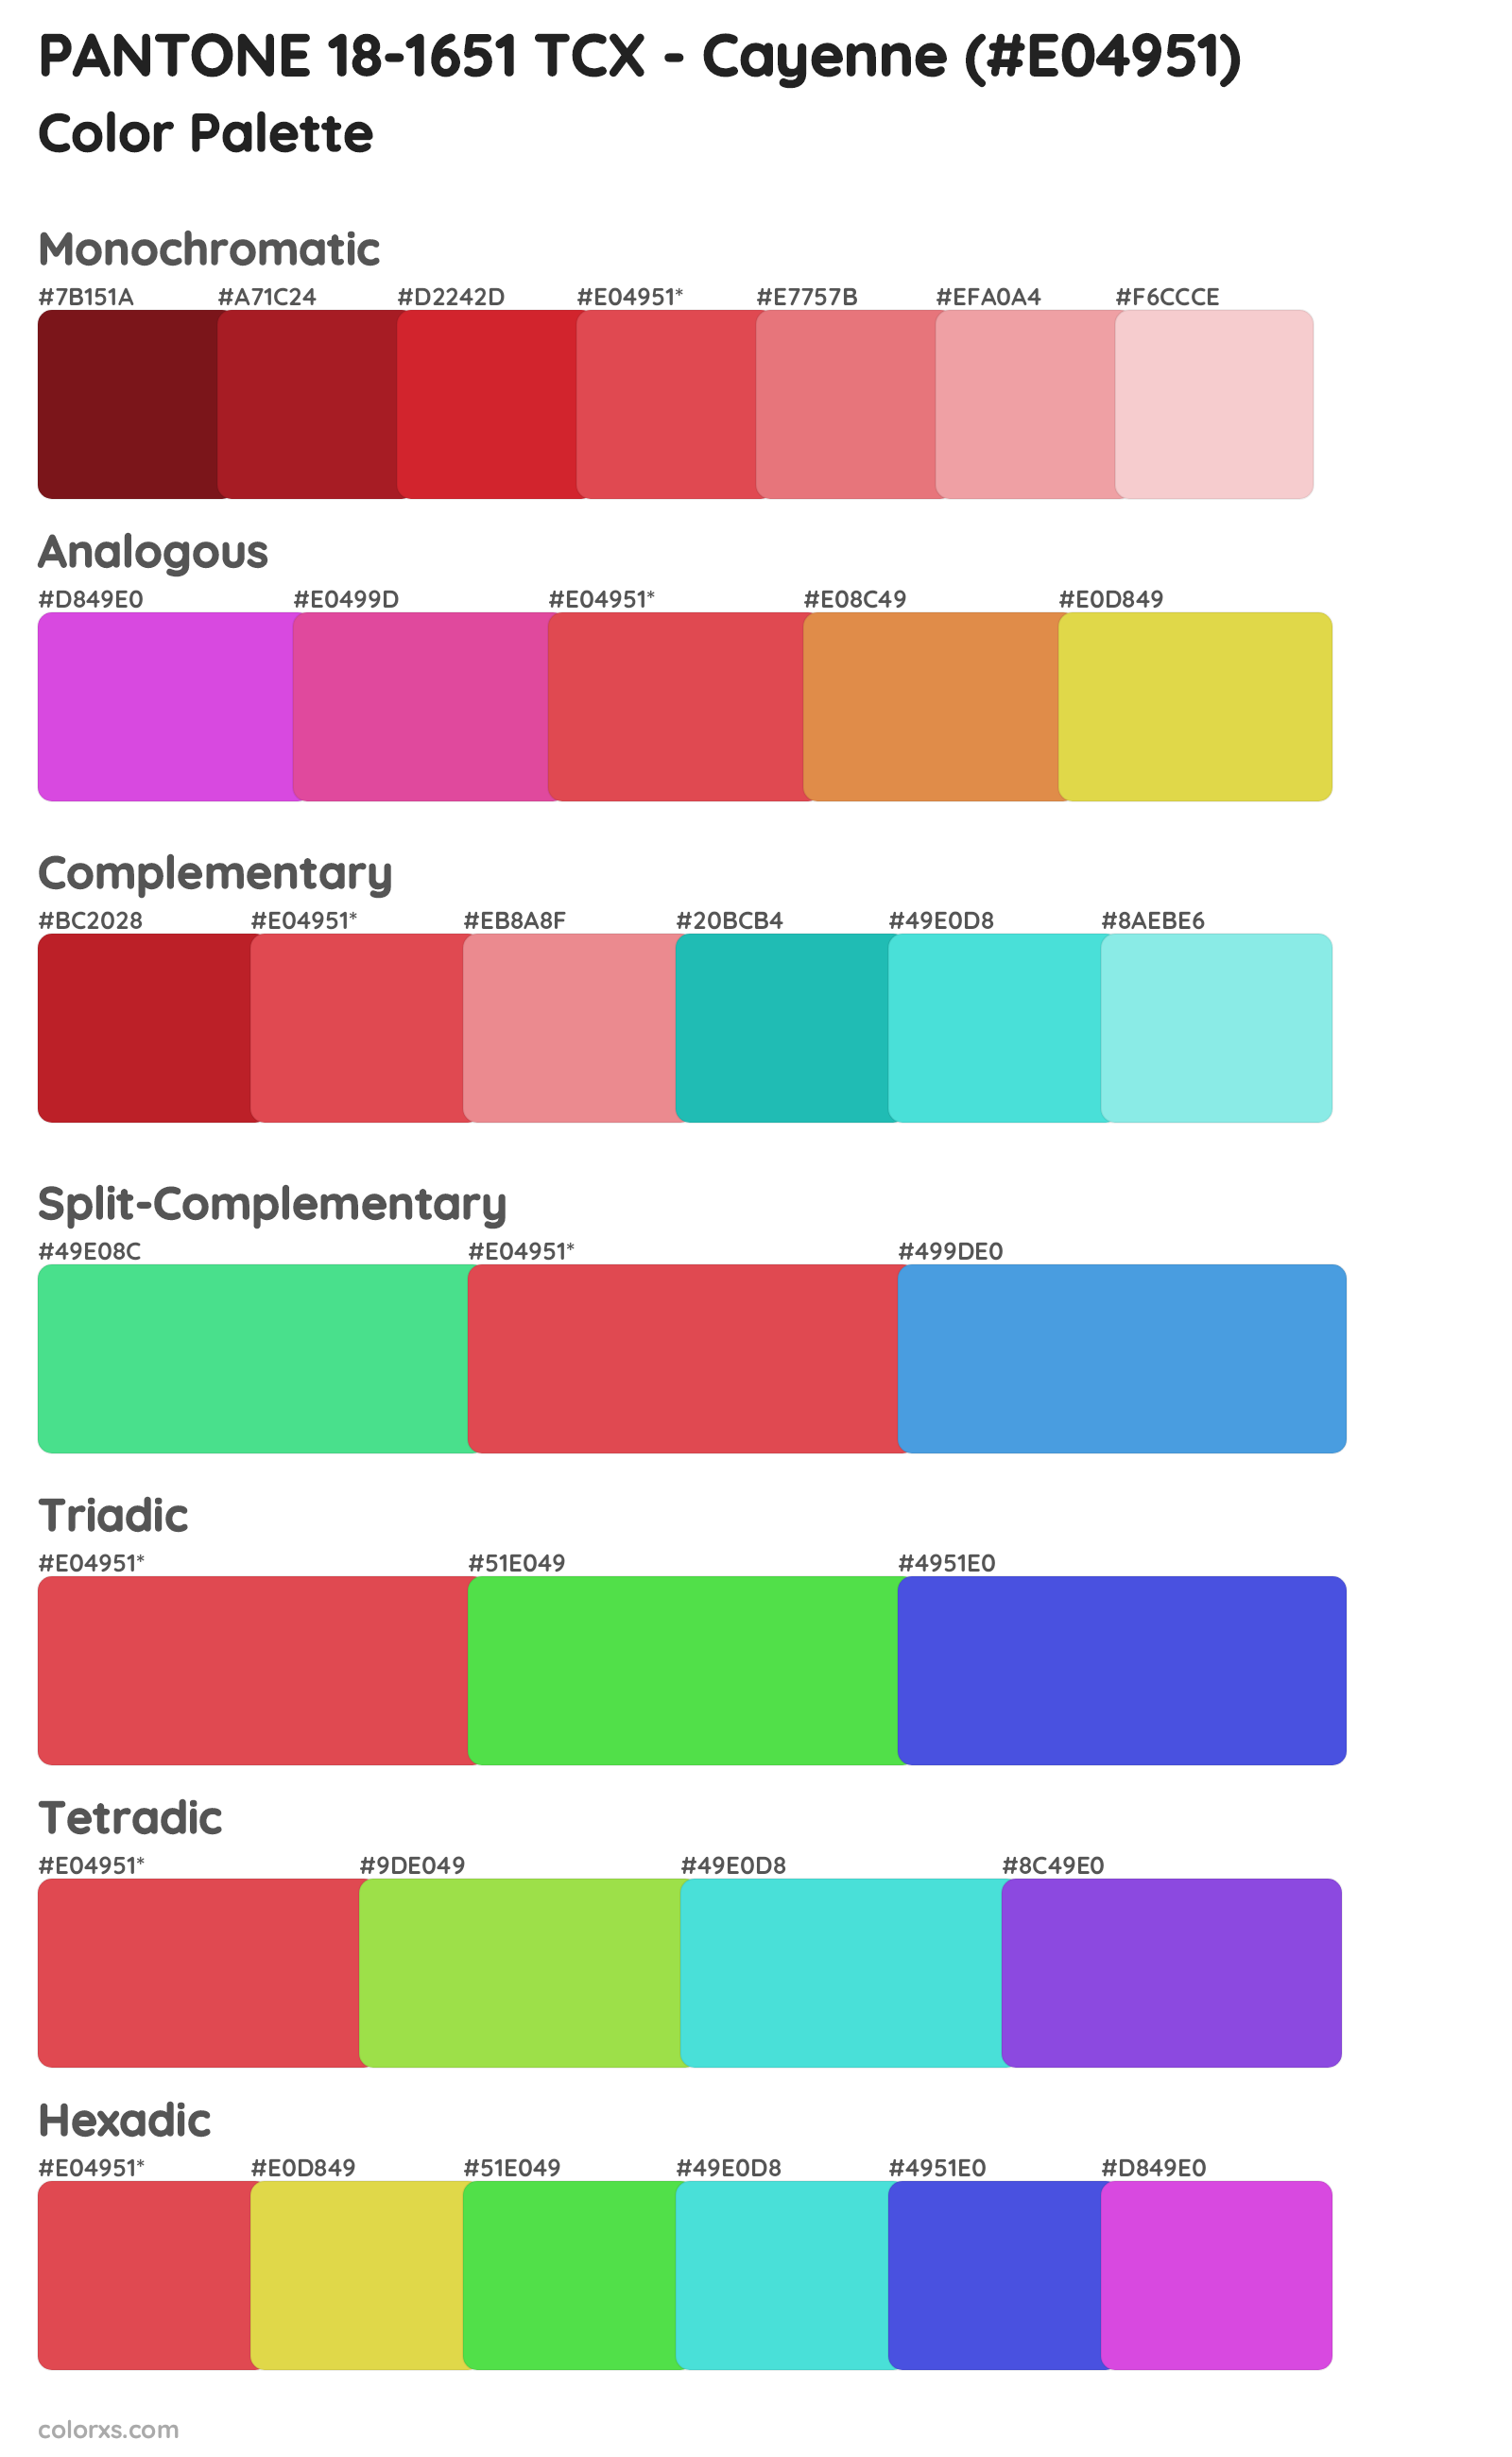 PANTONE 18-1651 TCX - Cayenne Color Scheme Palettes